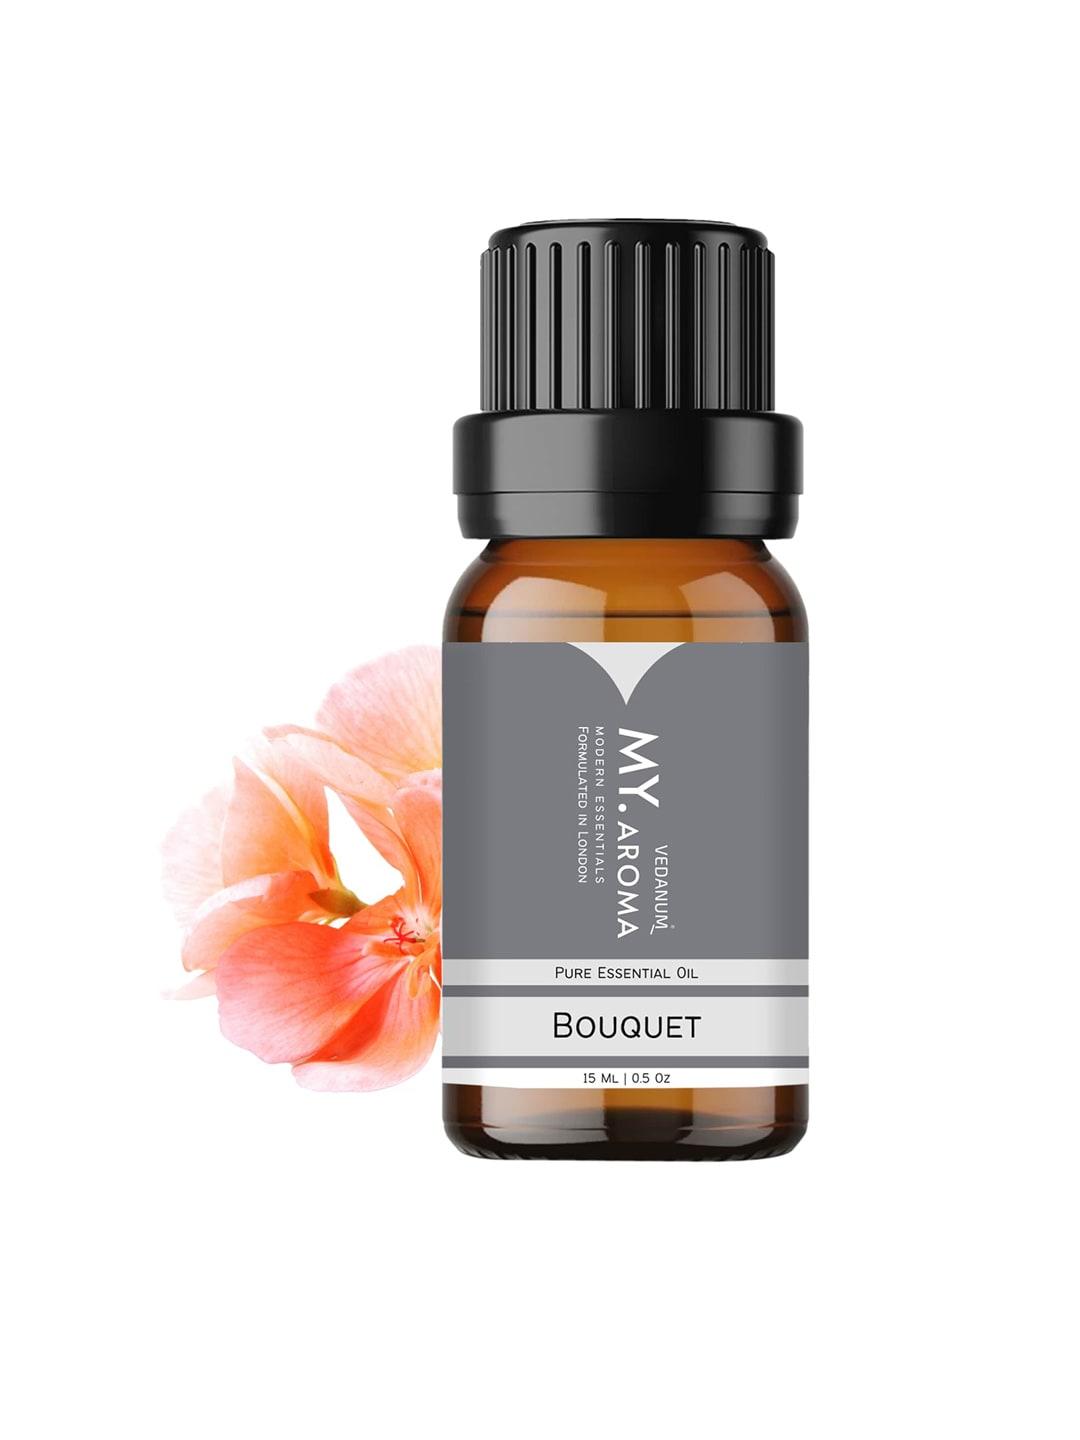 VEDANUM Premium Organic Floral Boquet Essential Oil Fragrance 15ml